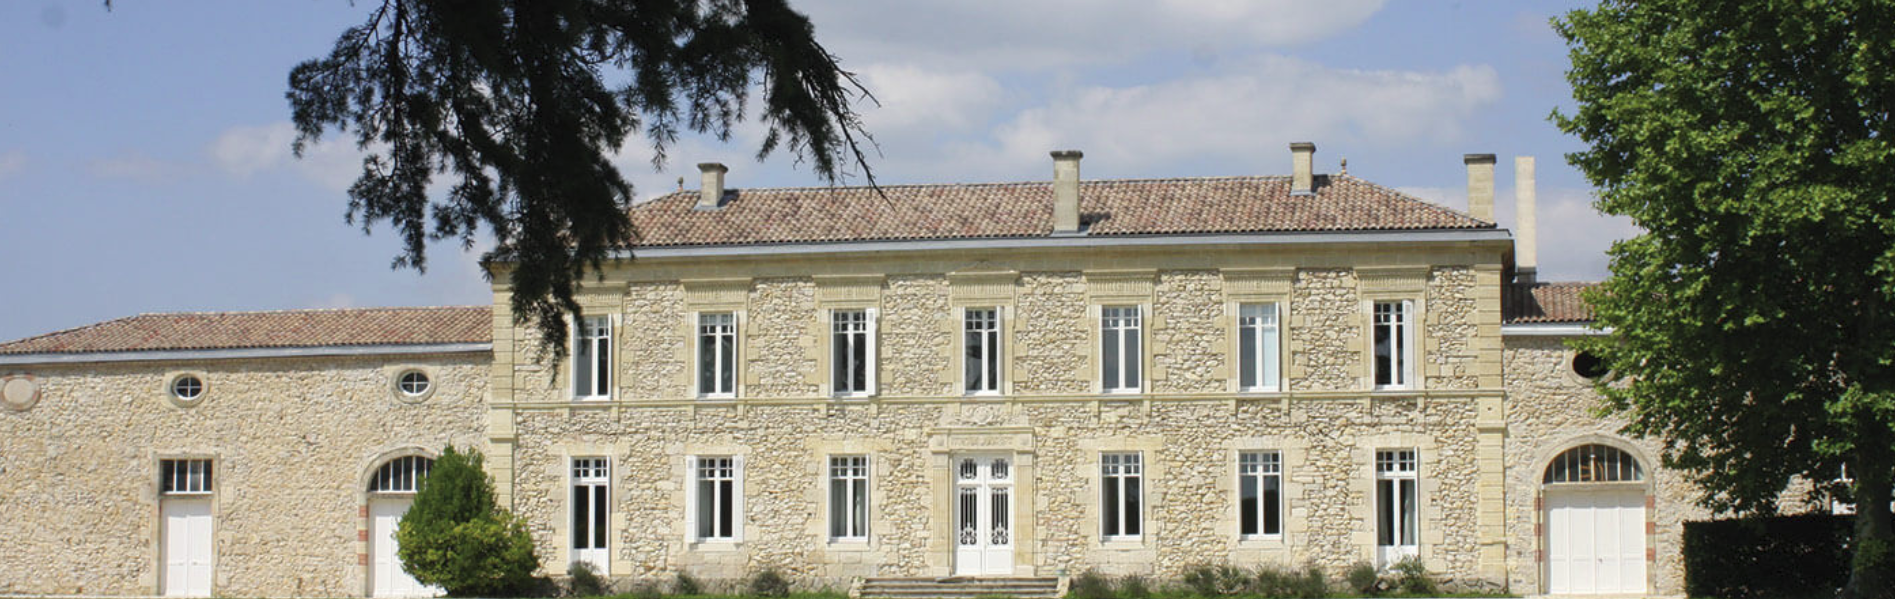 Chateau de Landiras Wine Buy About Online Learn - 